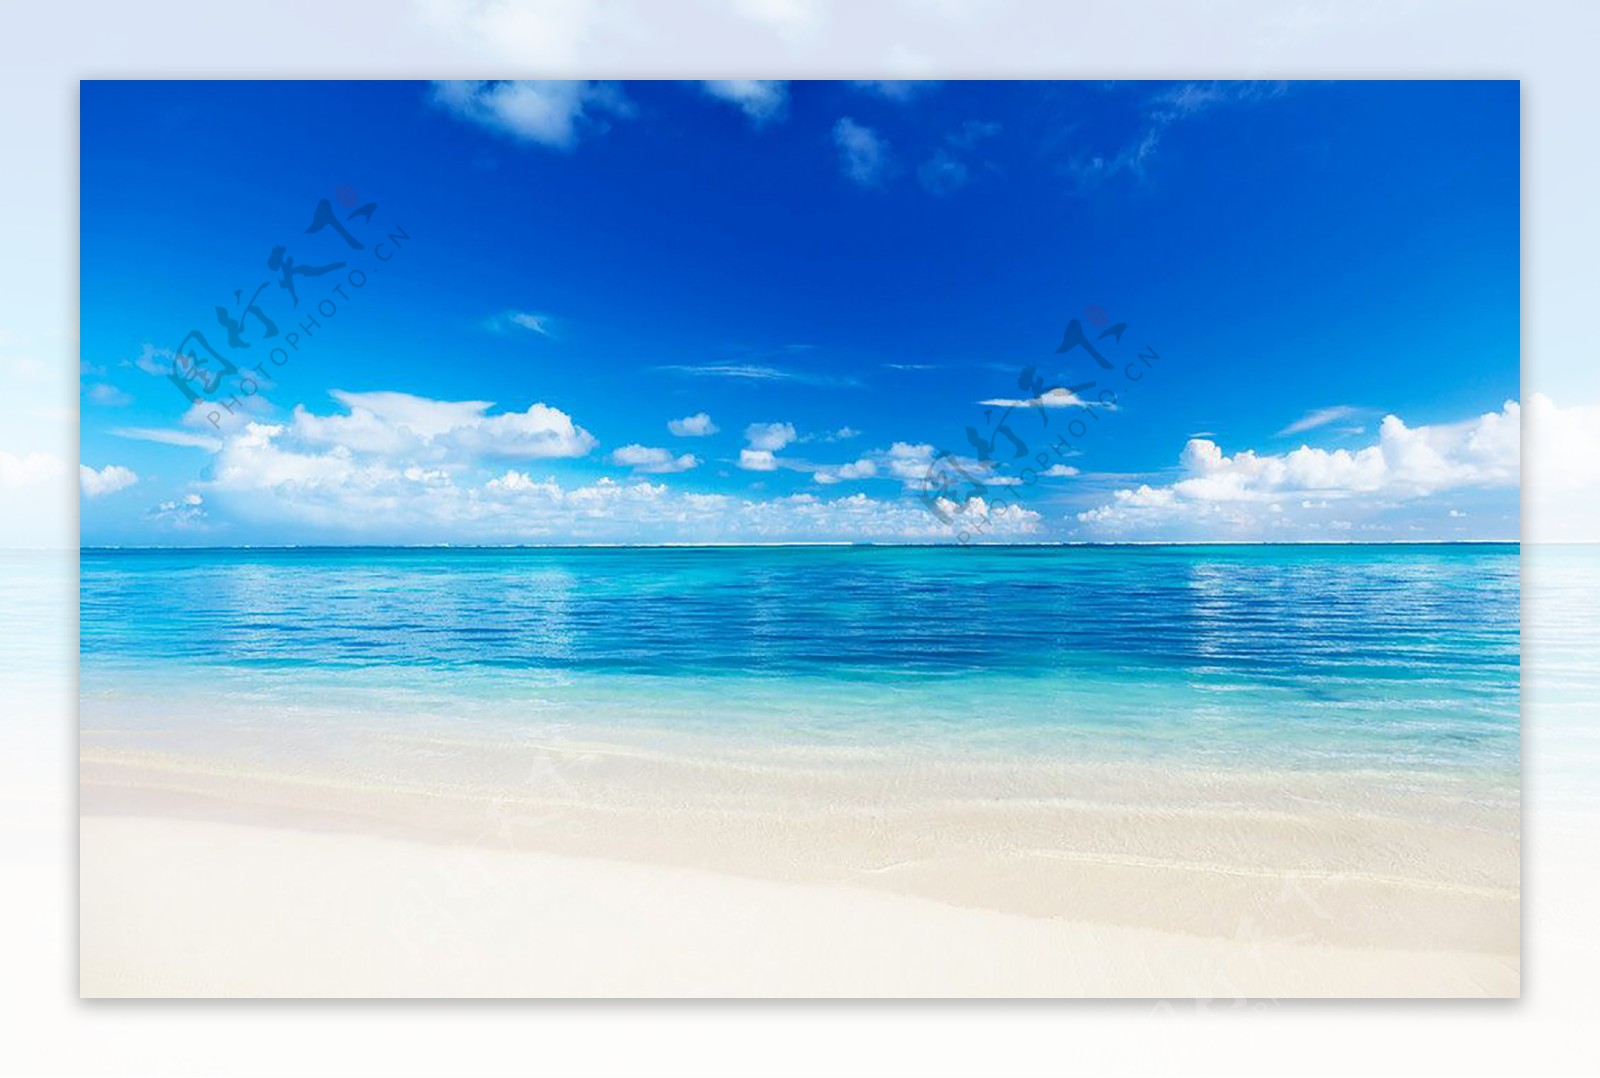 蓝天白云金色沙滩风景照片